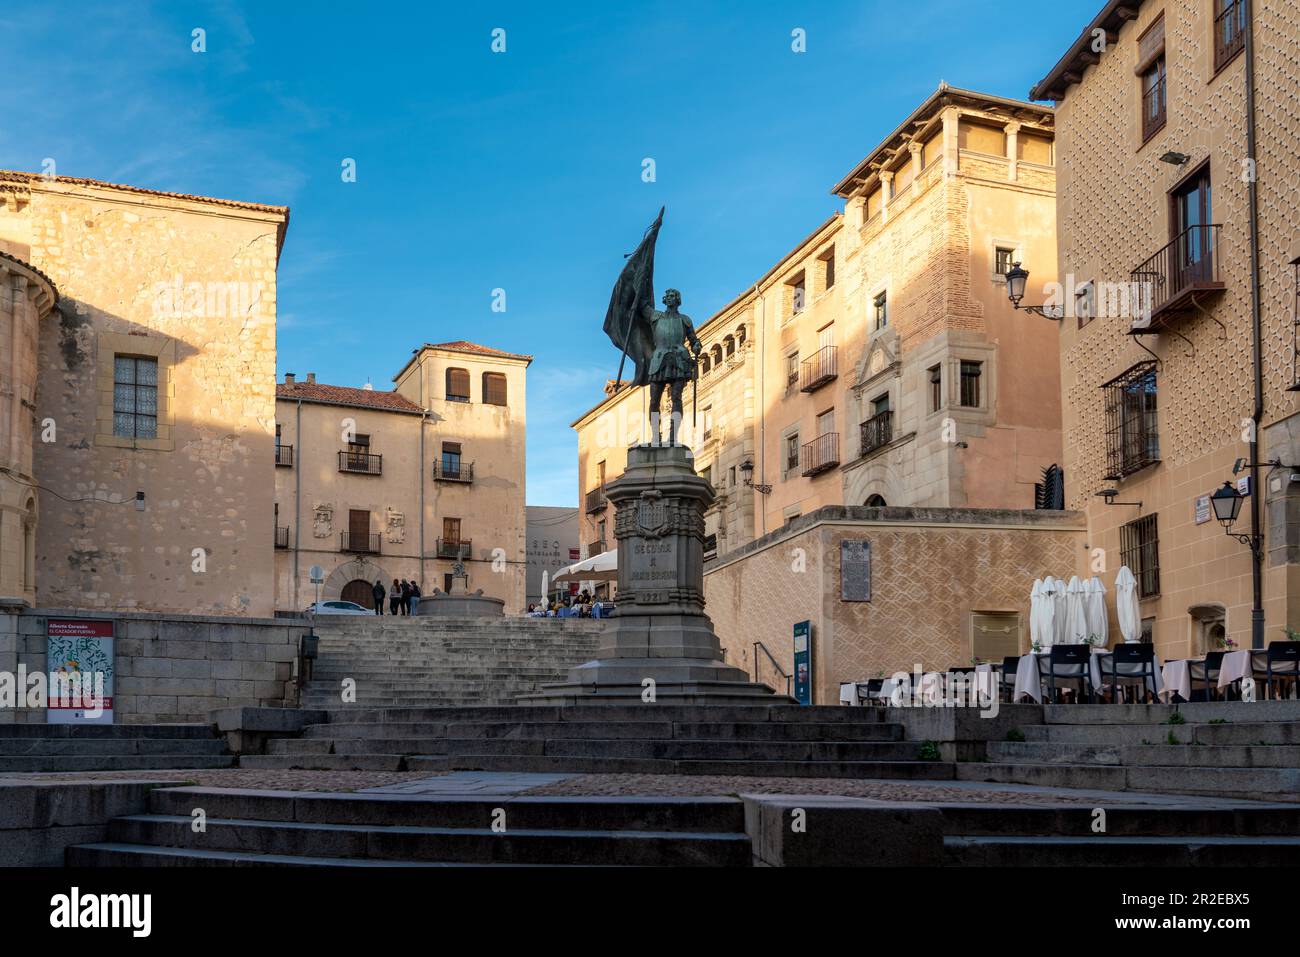 Vista de la Plaza Medina del Campo en el centro de la ciudad de Segovia. Los turistas admiran la hermosa arquitectura de esta ciudad medieval. Destino del viaje Foto de stock